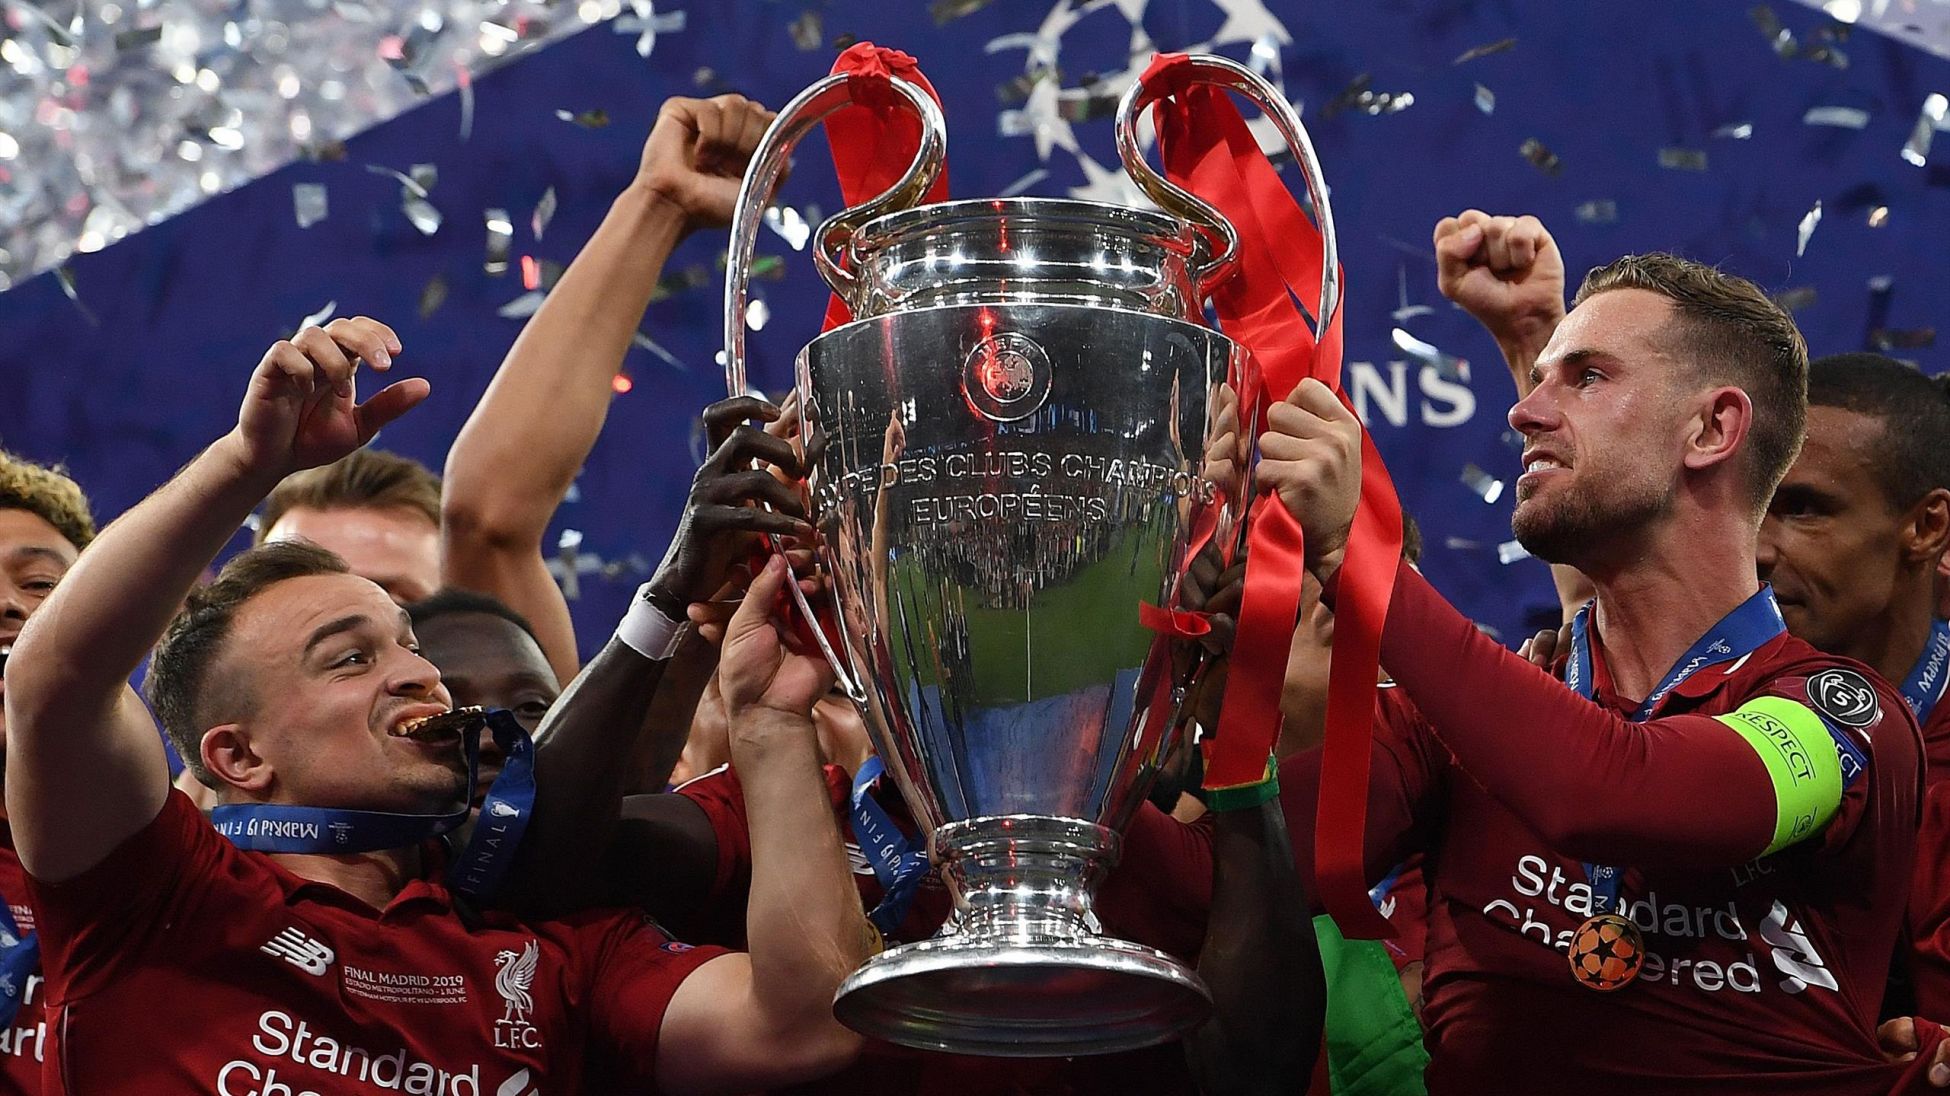 Vainqueur de la Ligue des Champions- Liverpool renoue avec son glorieux passé